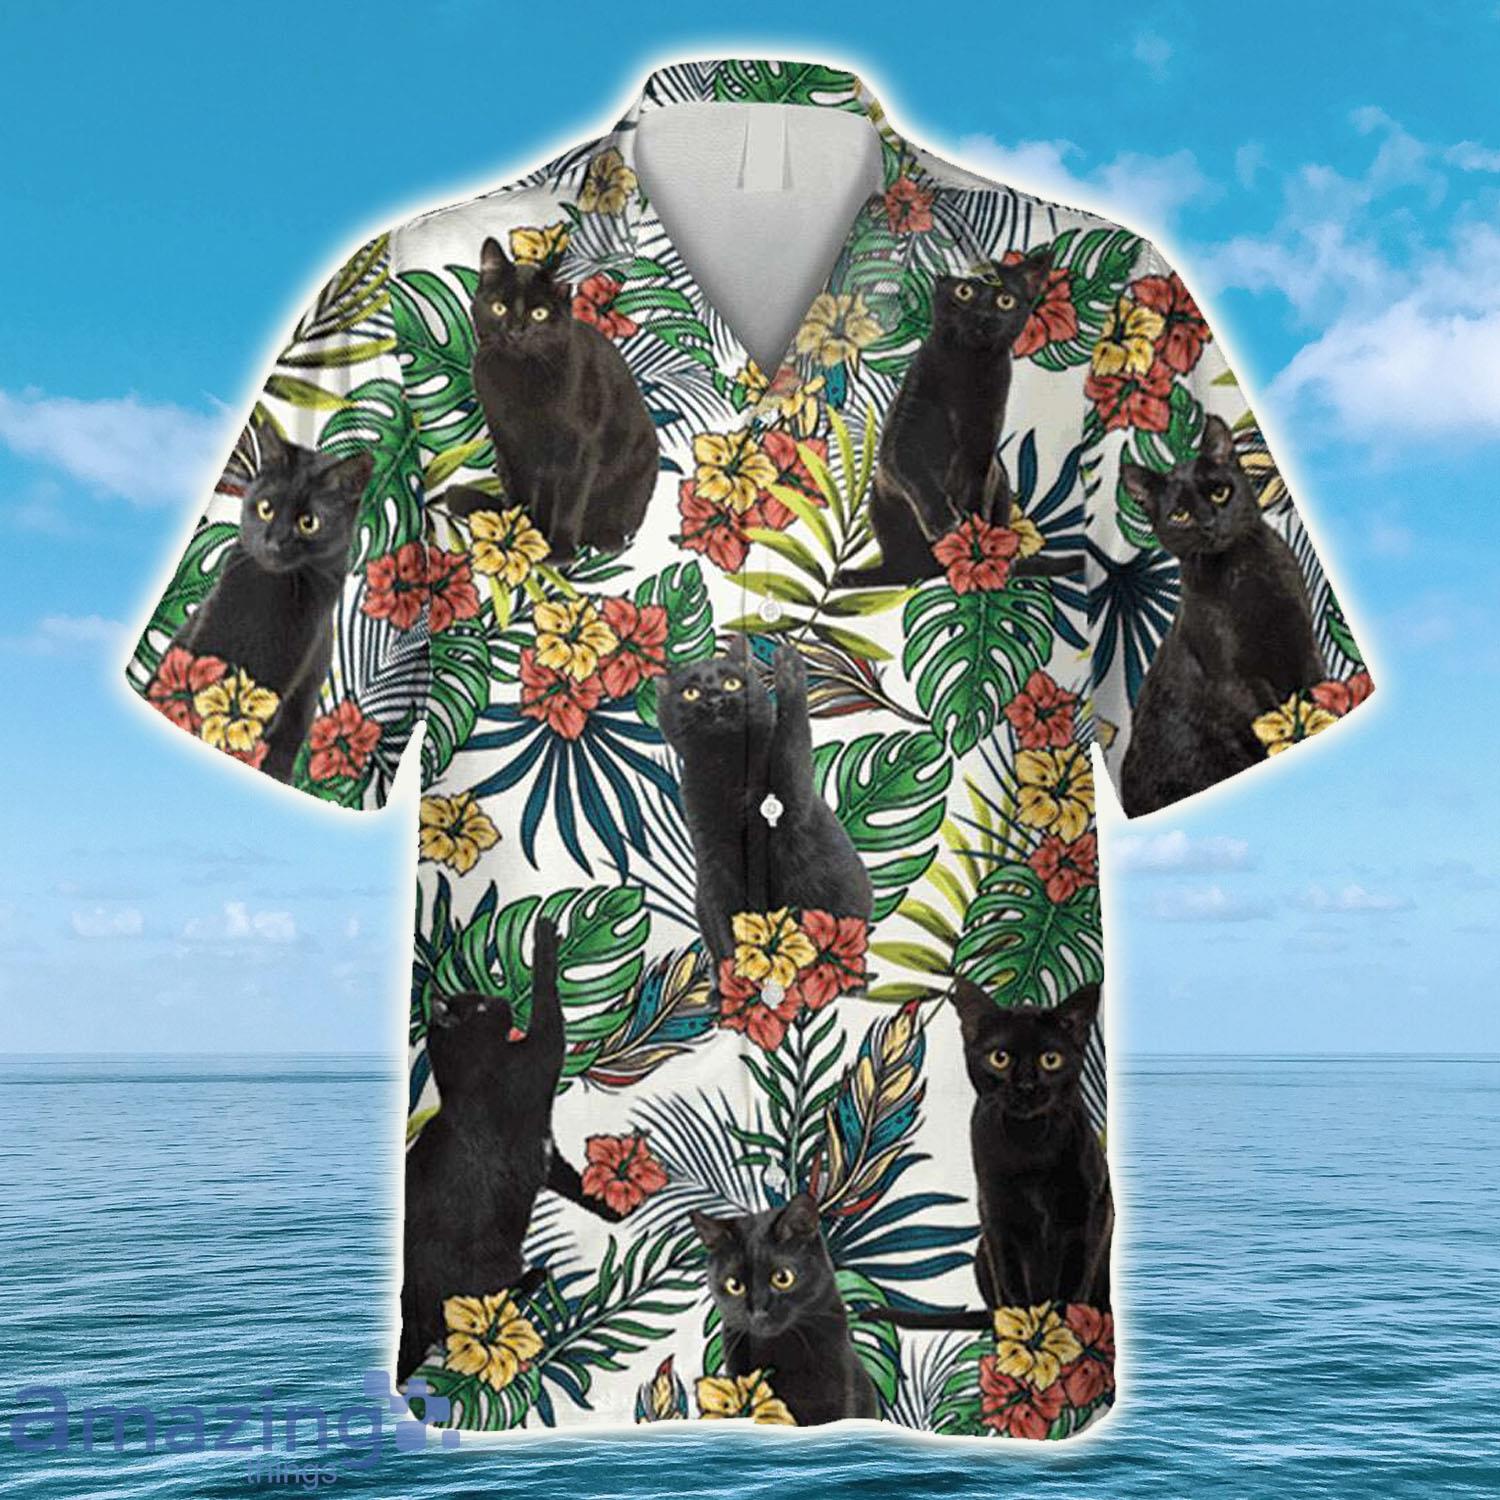 Vintage Black Cat Beach Relax Shirt, Cat Hawaiian Shirt - Vintage Black Cat Beach Relax Shirt, Cat Hawaiian Shirt